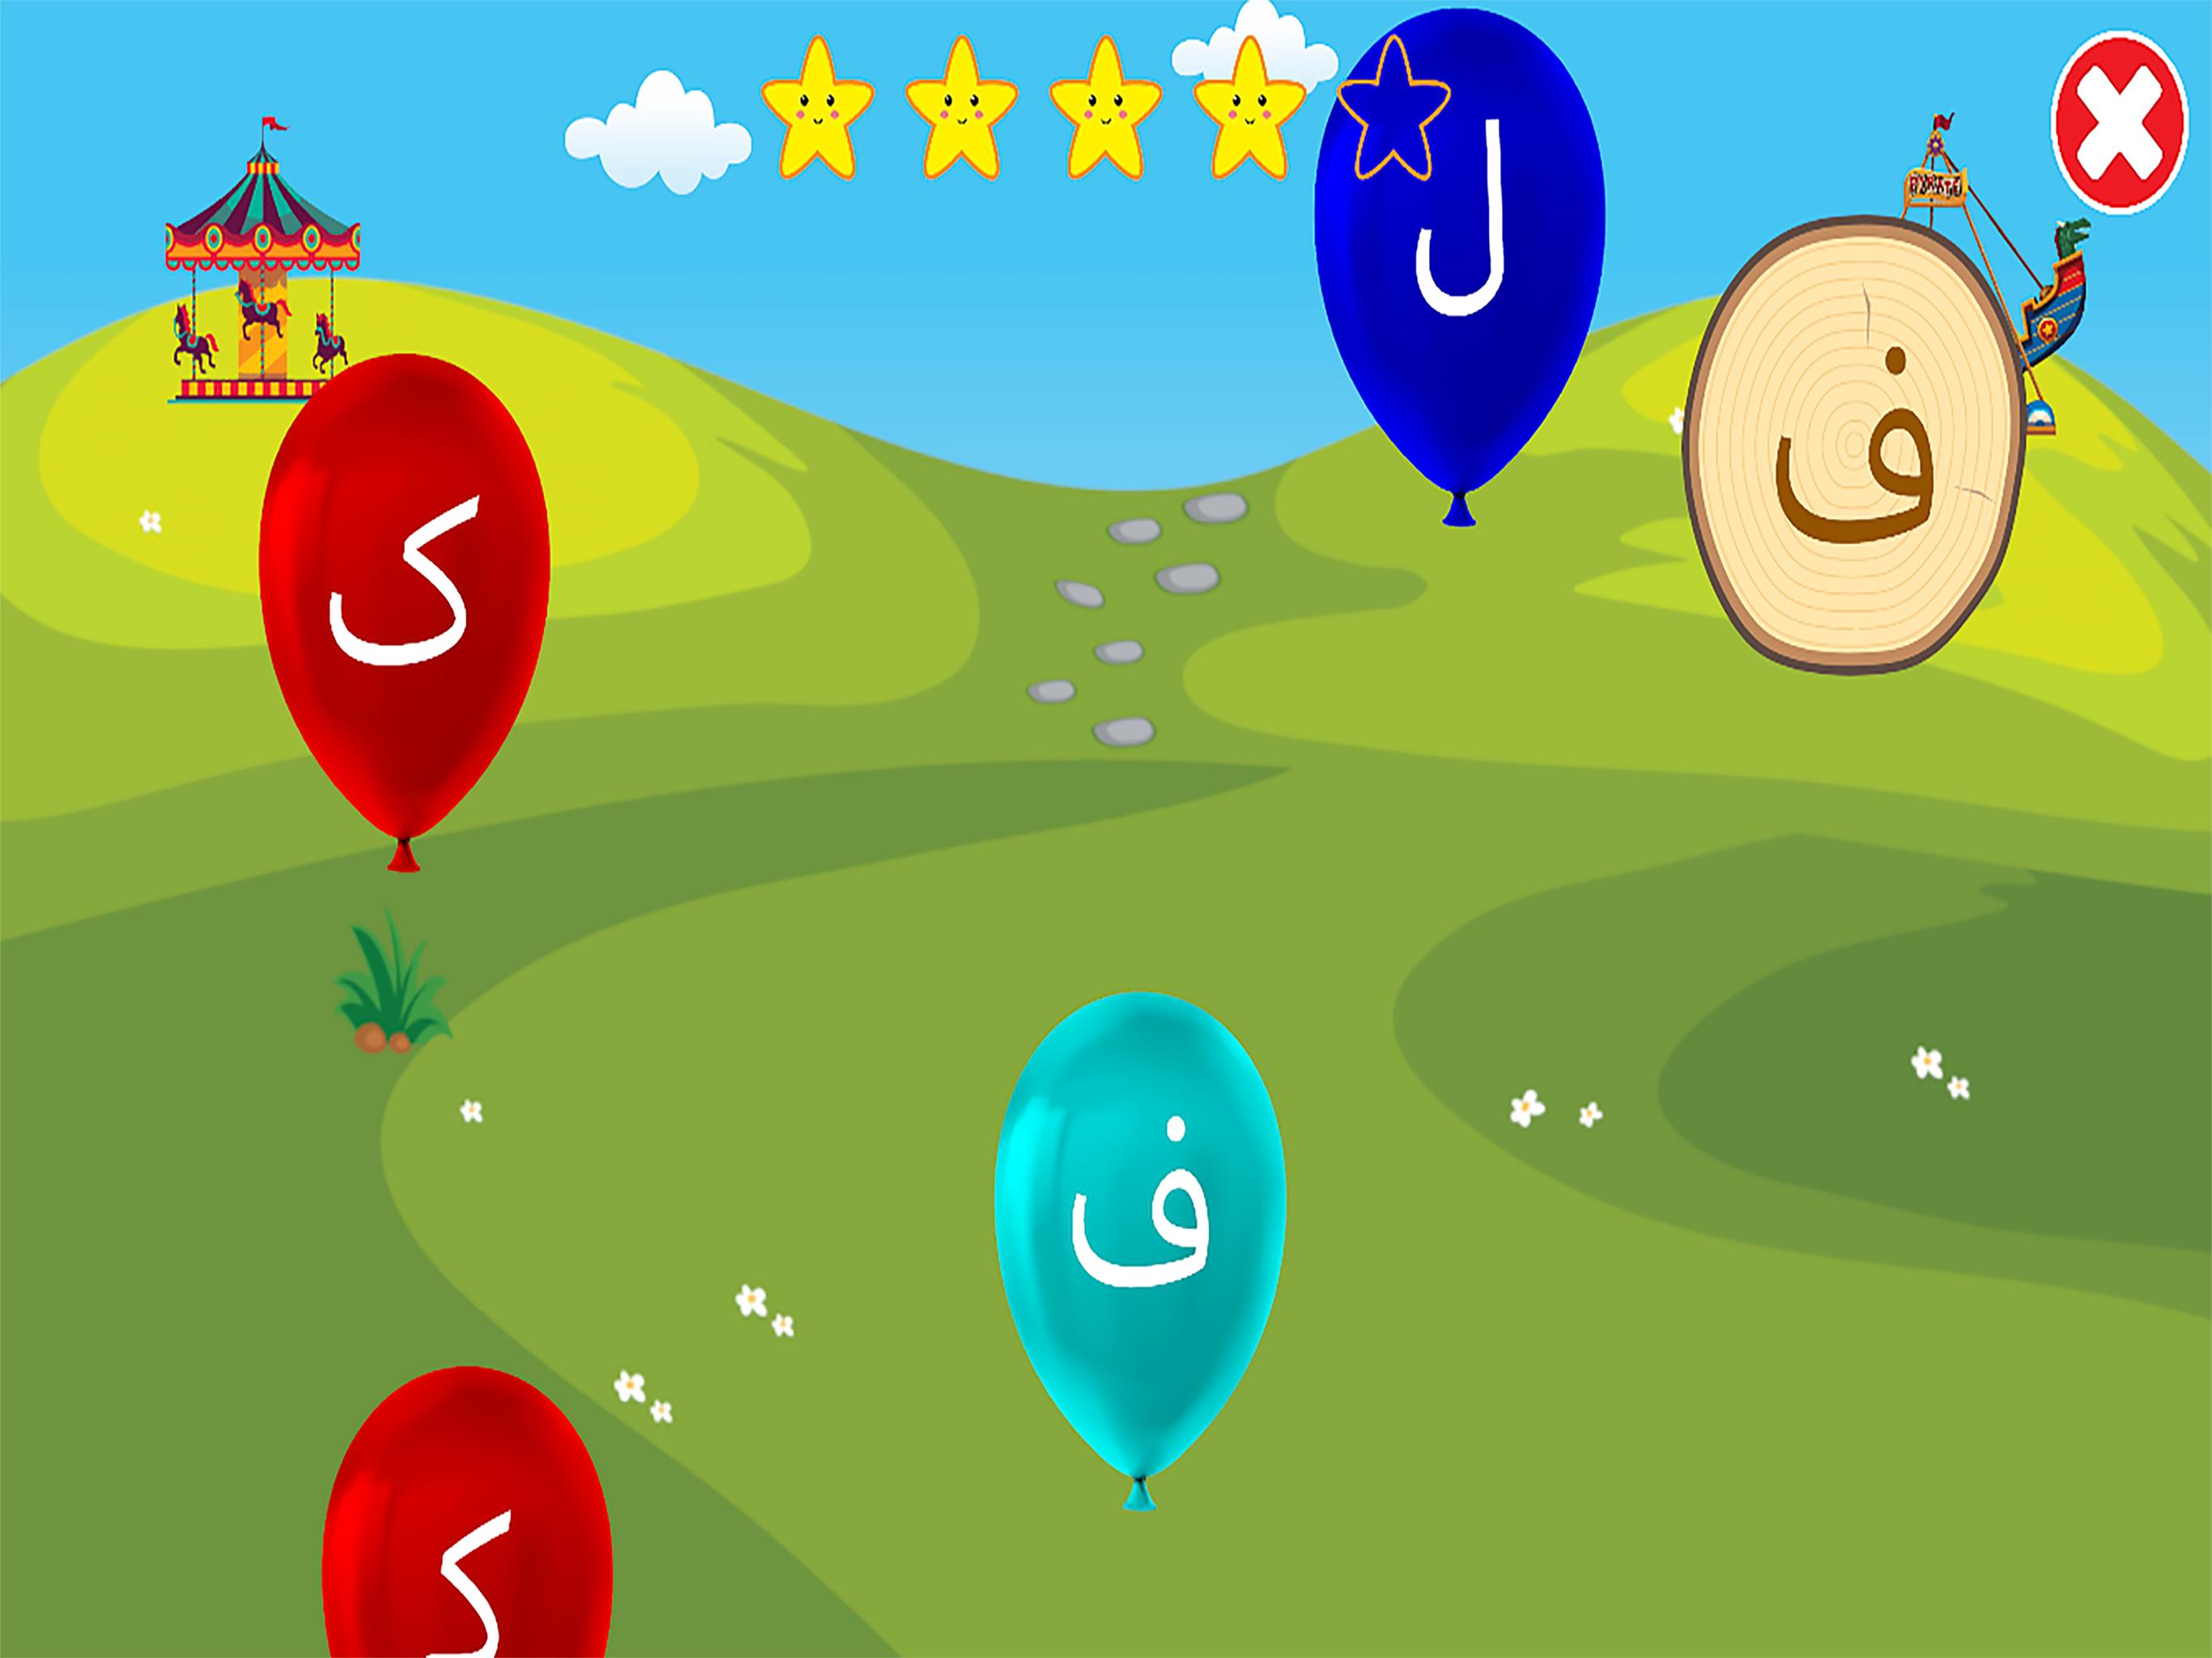 الفبای فارسی کودکان (Farsi alphabet game) 1.11.2 Screenshot 23